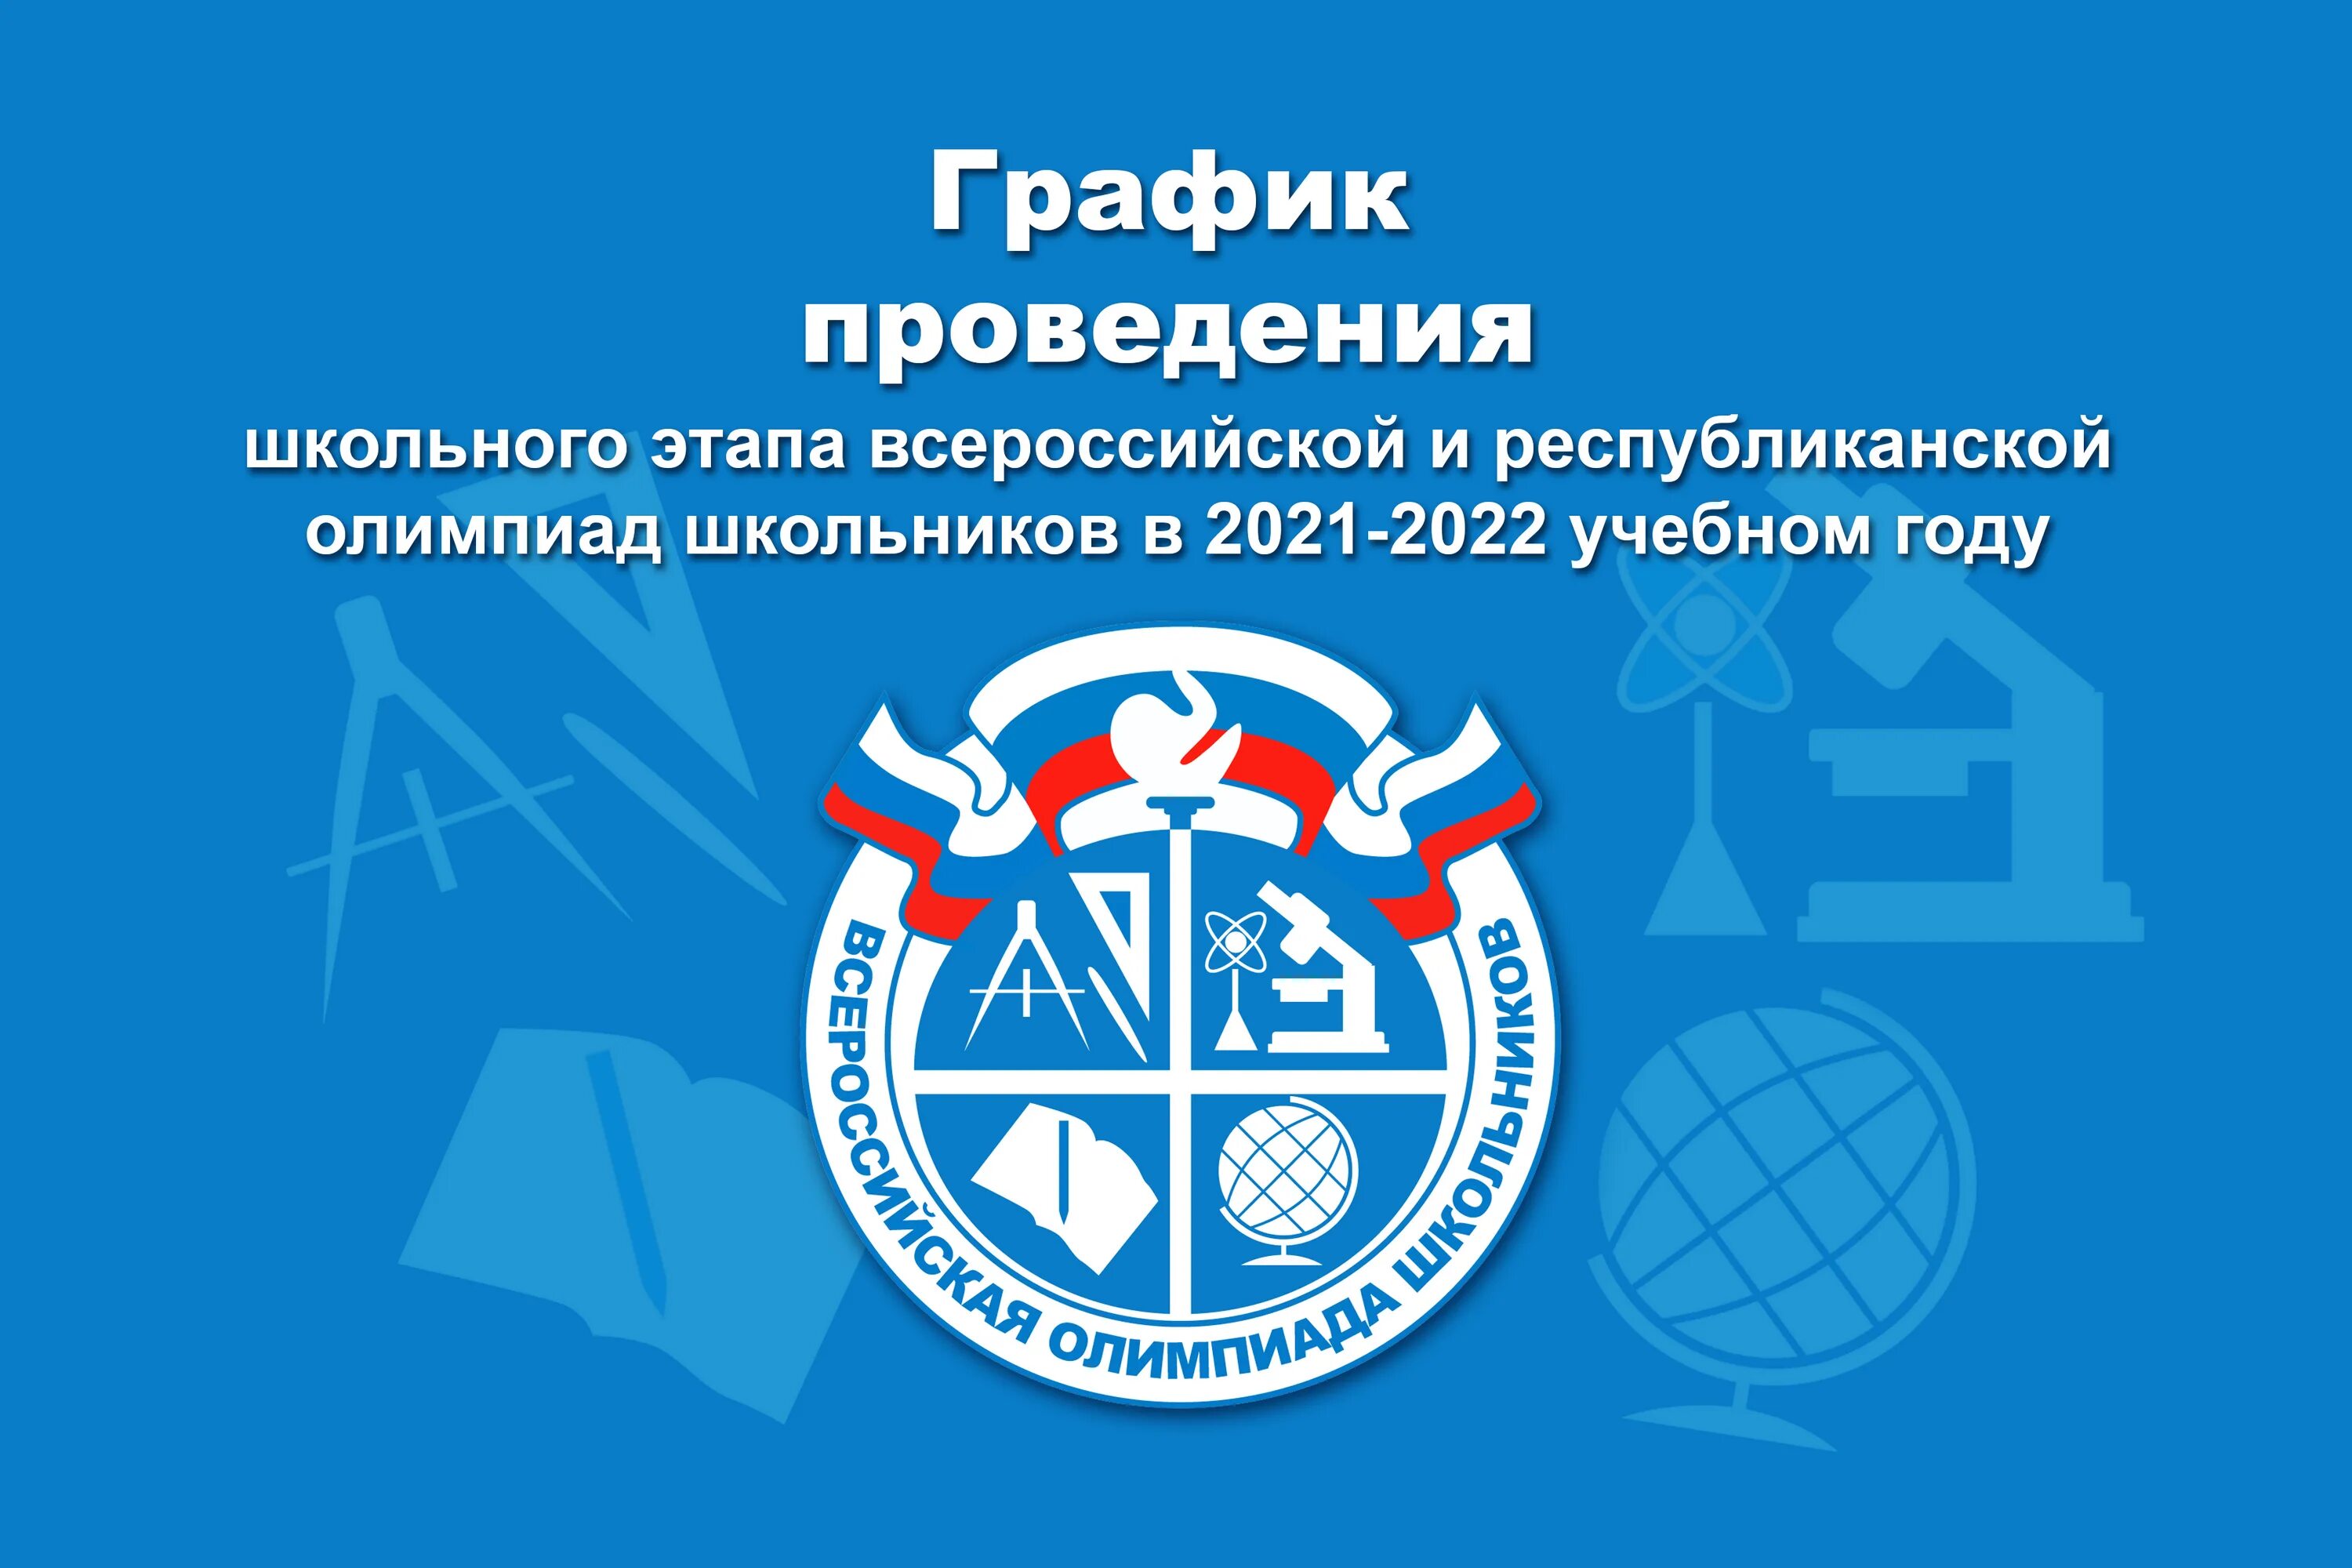 Логотип ВСОШ 2021-2022.